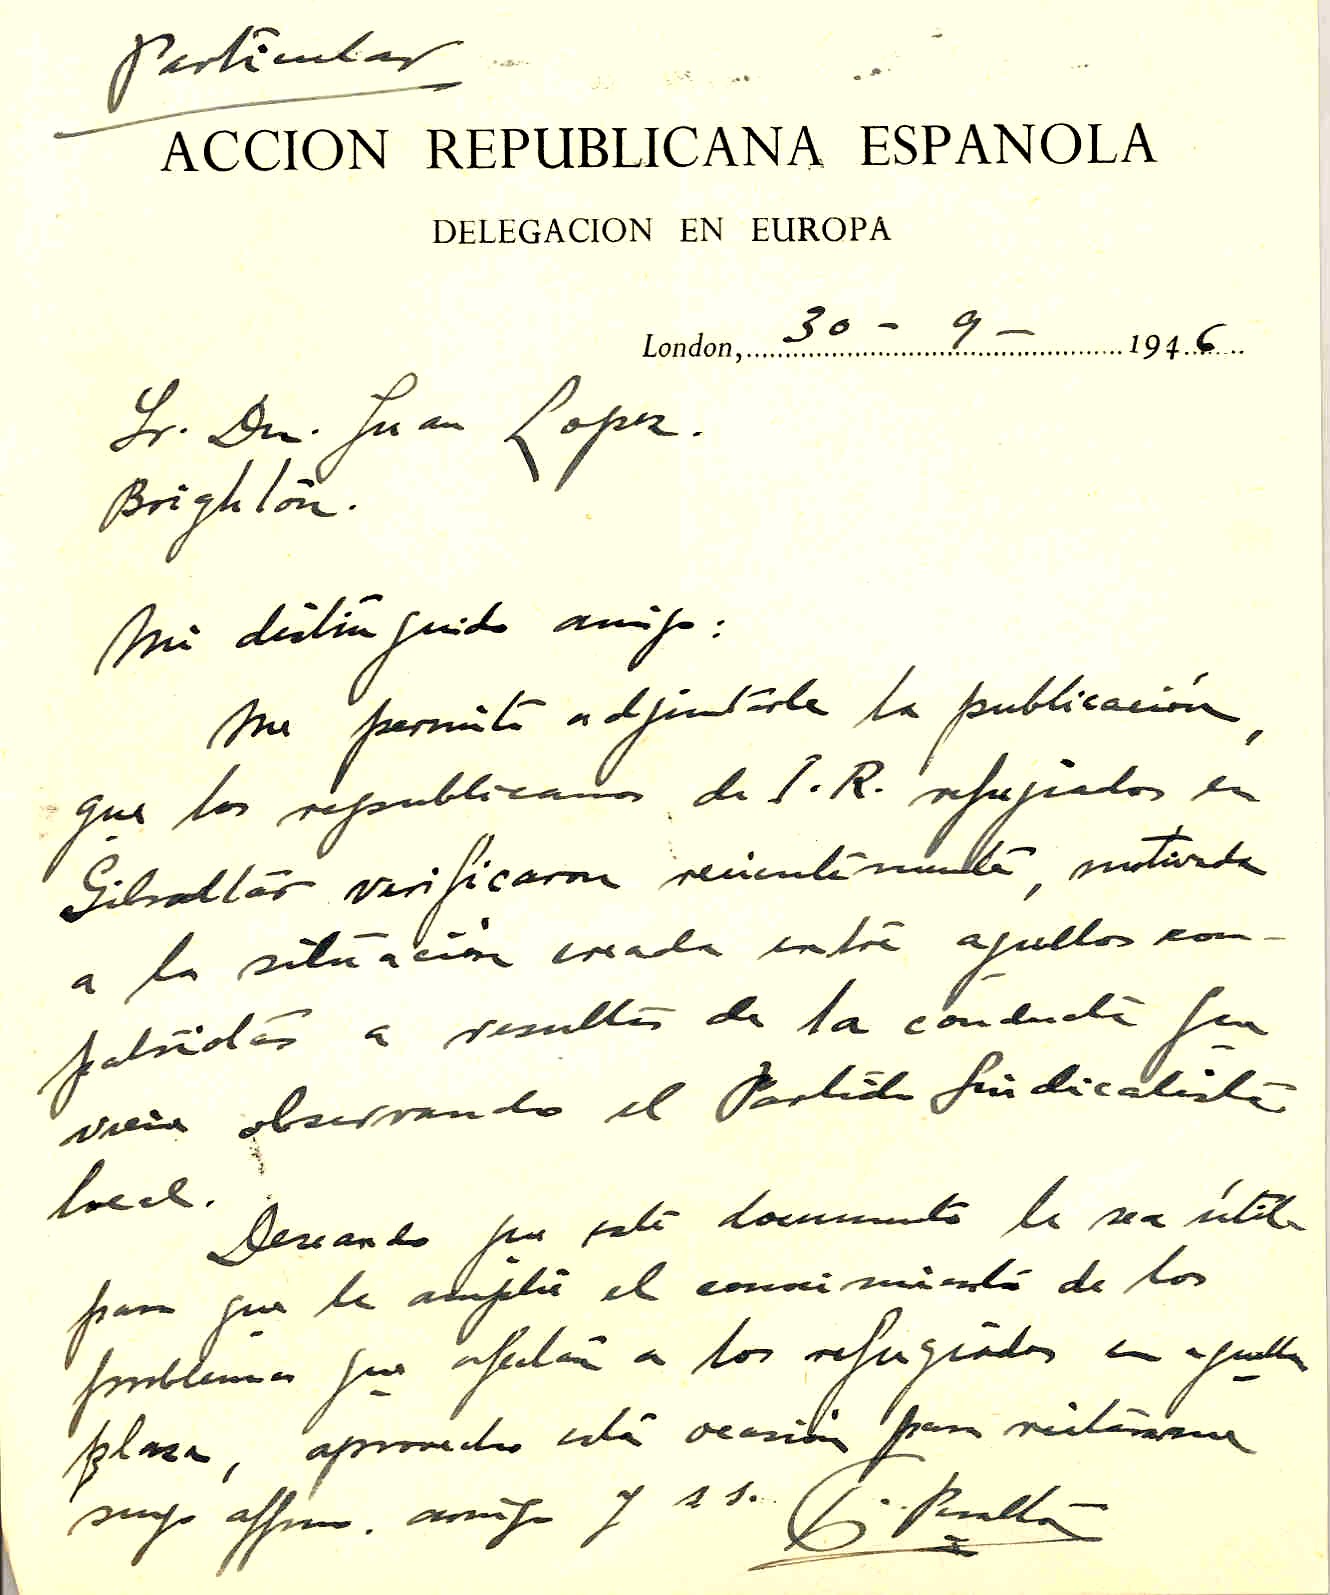 Carta de Francisco Peralta, vice-secretario de la Delegación en Europa de Acción Republicana Española, adjuntándole una publicación sobre las actividades de los refugiados españoles en Gibraltar.